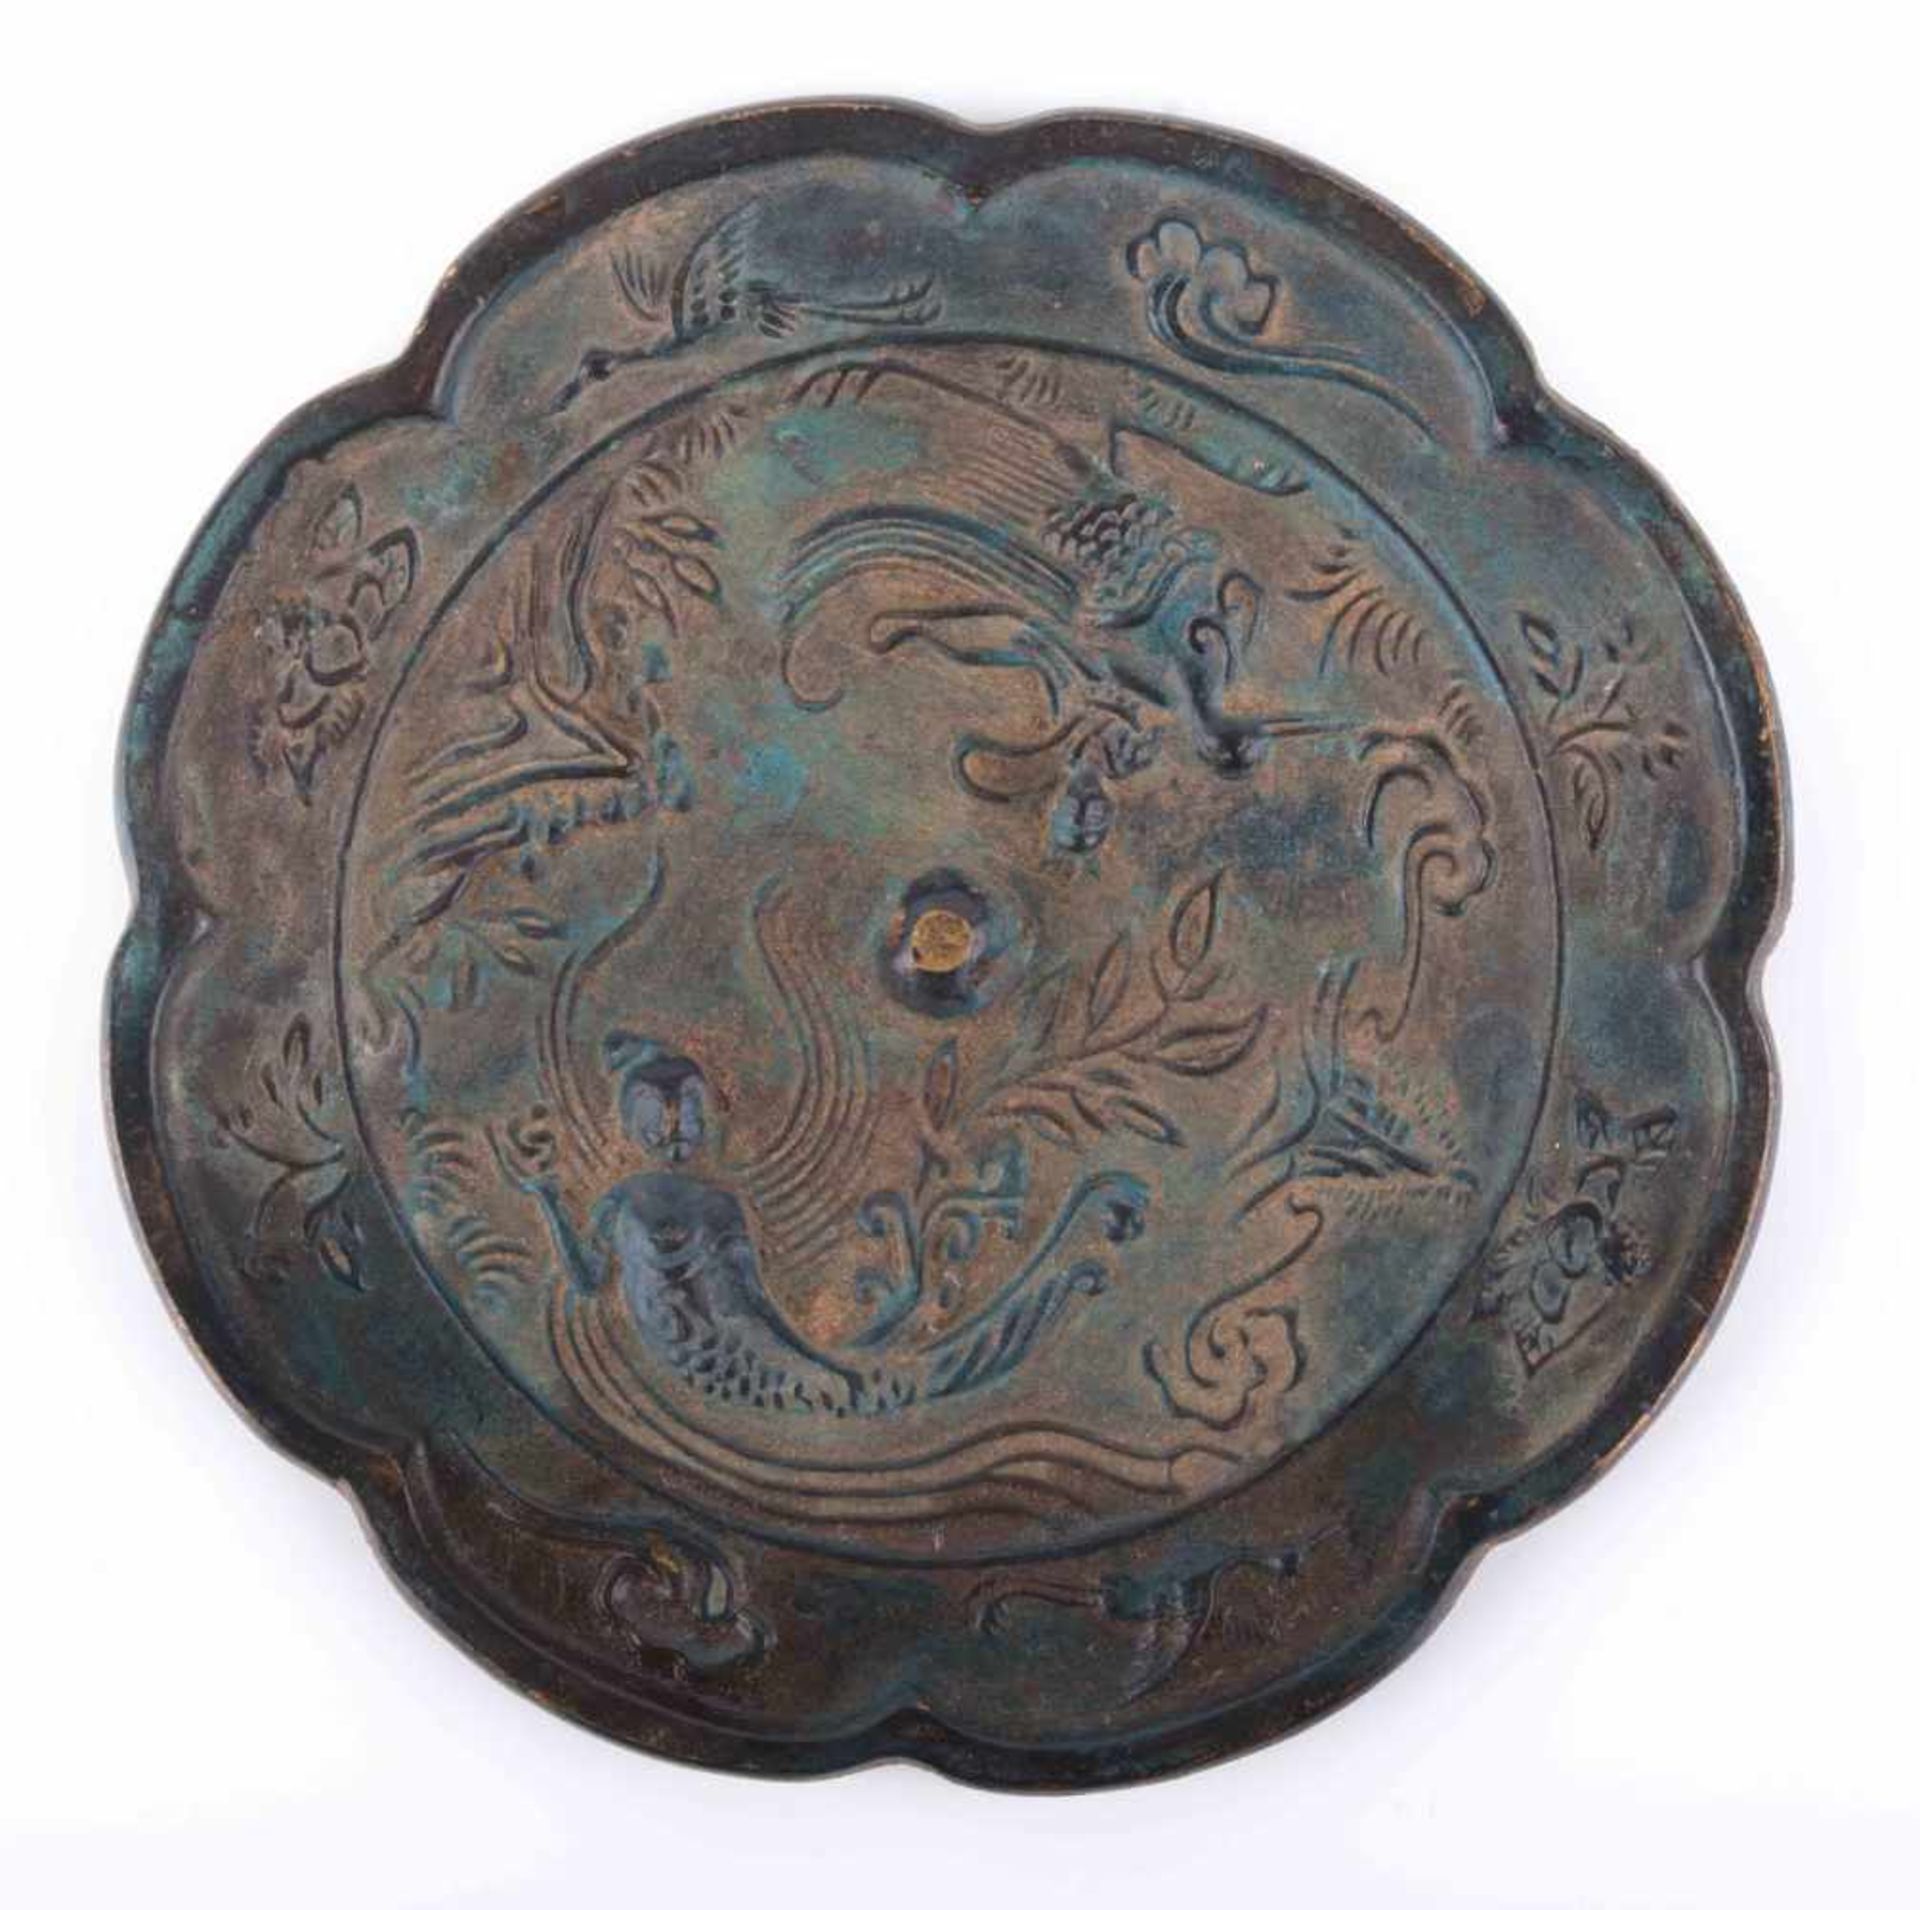 Chinesischer Spiegel 18./19. Jhd. oder älter / Chinese mirror, 18th/19th century or older Bronze,